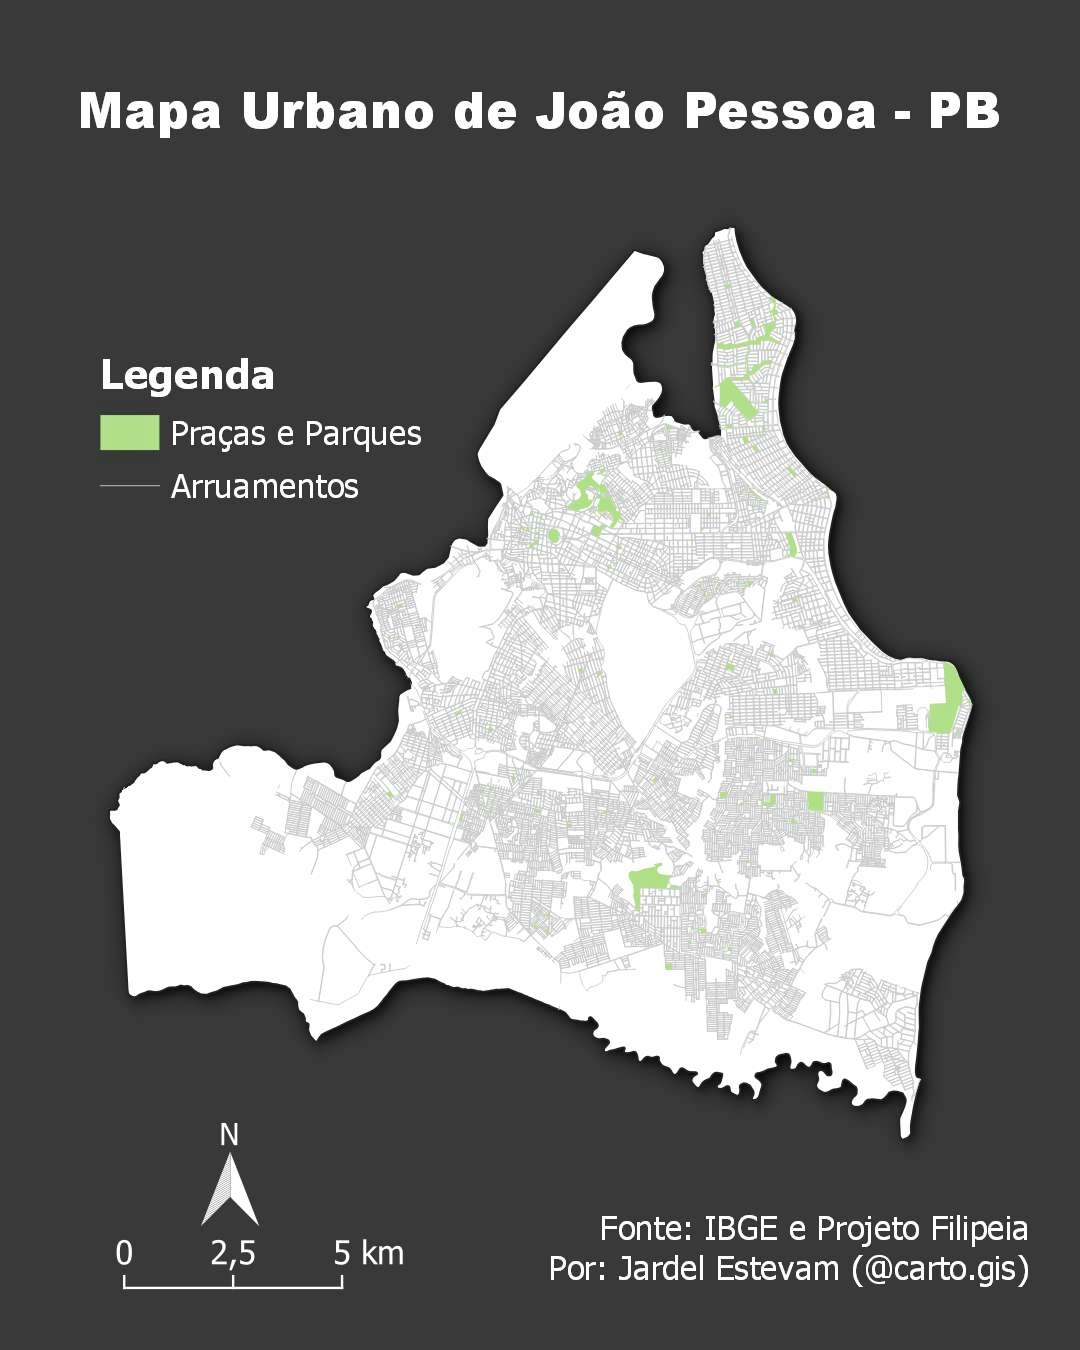 Mapa urbano de João Pessoa - PB